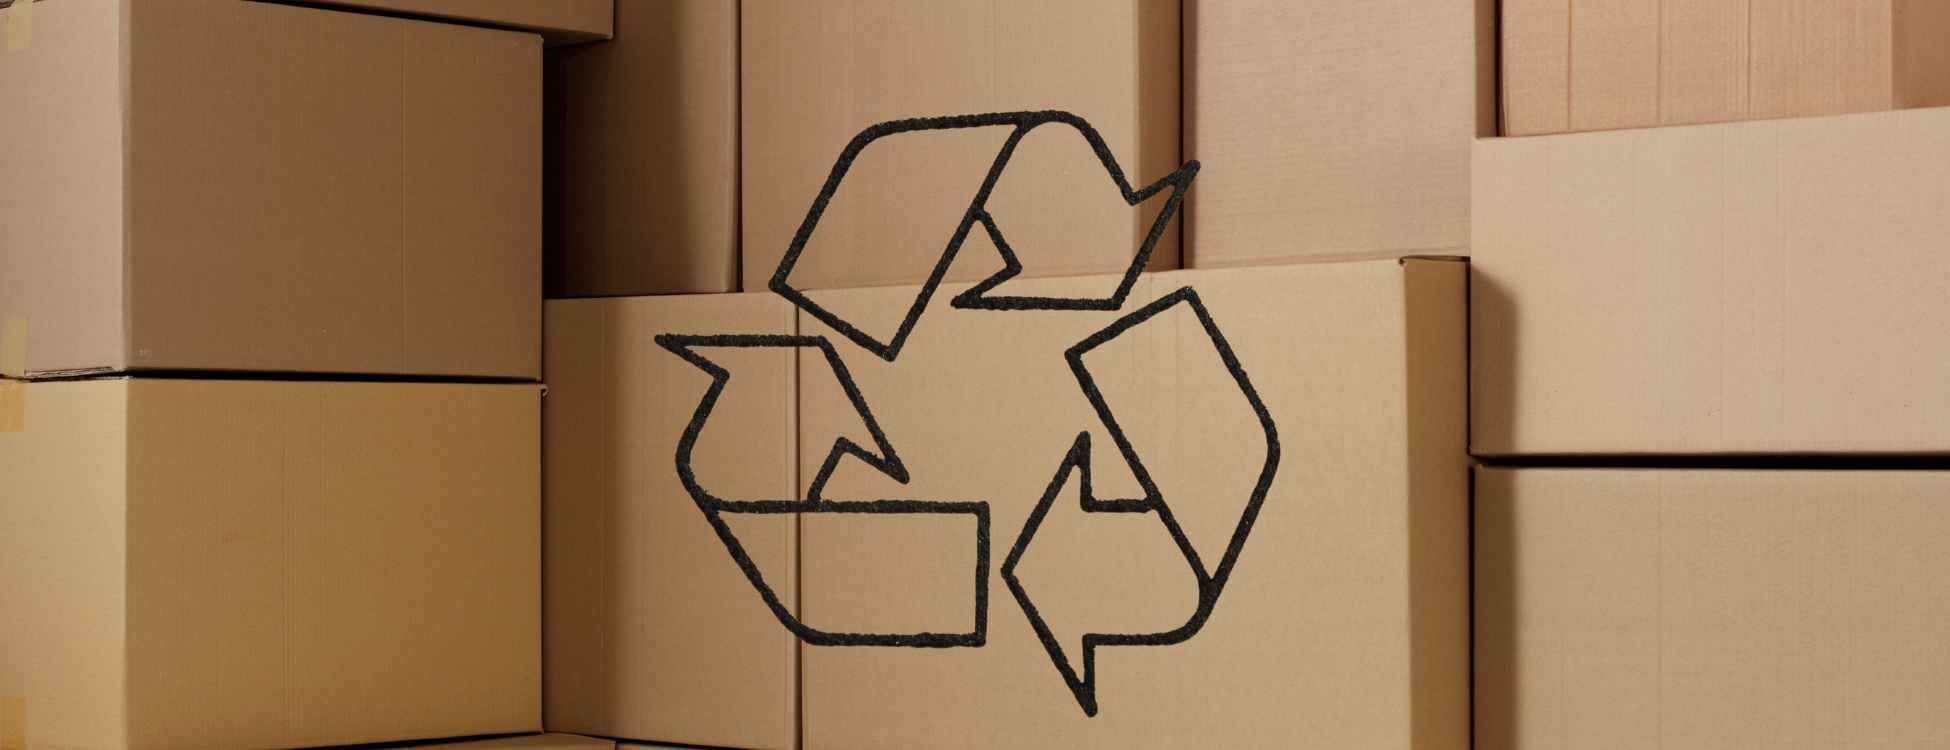 Femasa fábrica de cajas de cartón con el medio ambiente